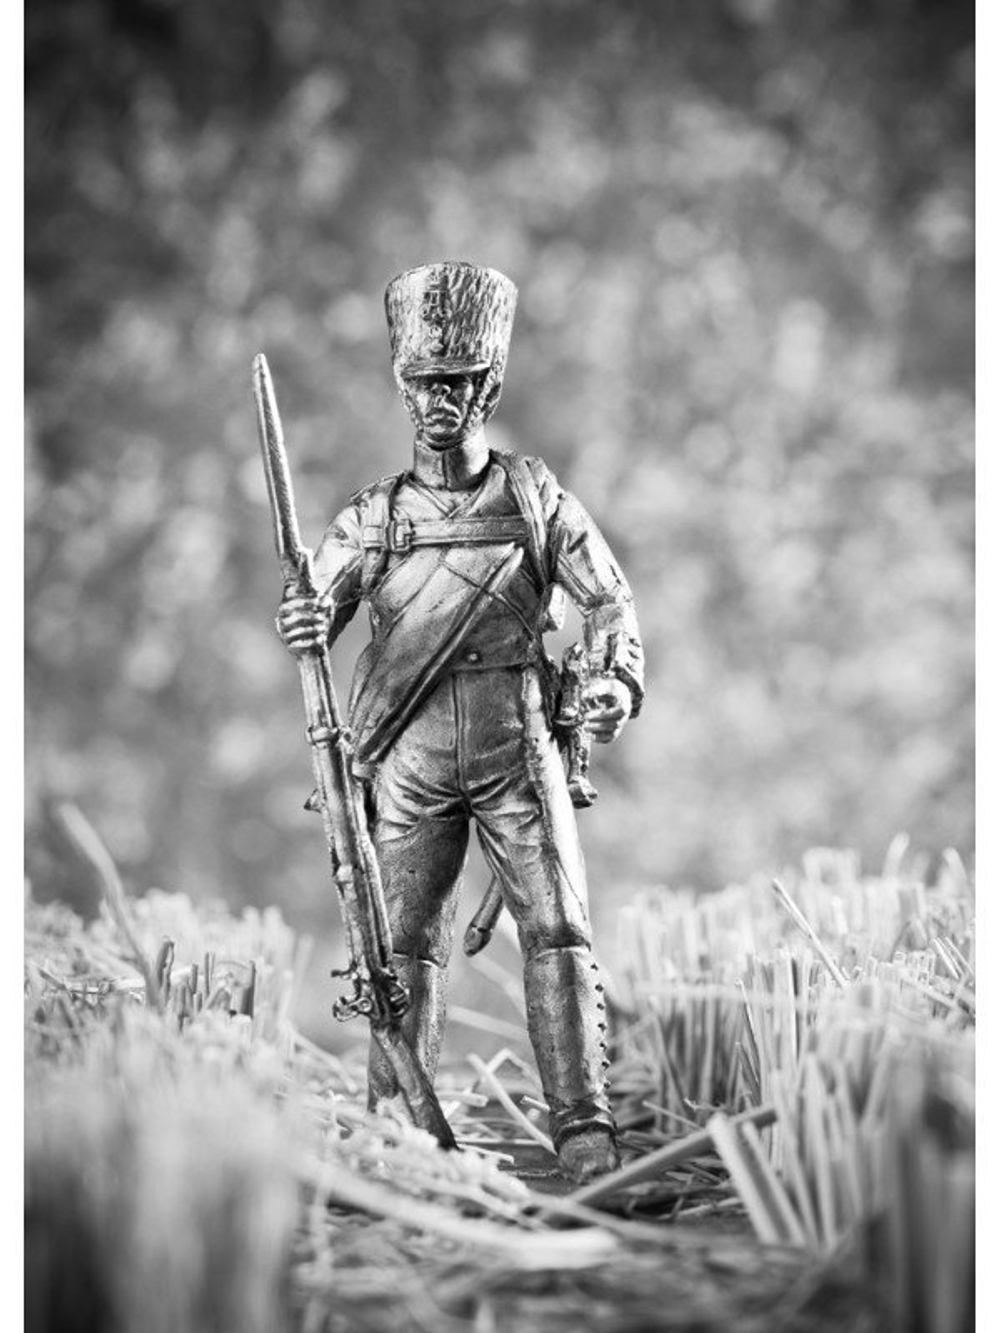 Оловянный солдатик Стрелок батальона Великой княгини Екатерины Павловны, 1812-1814